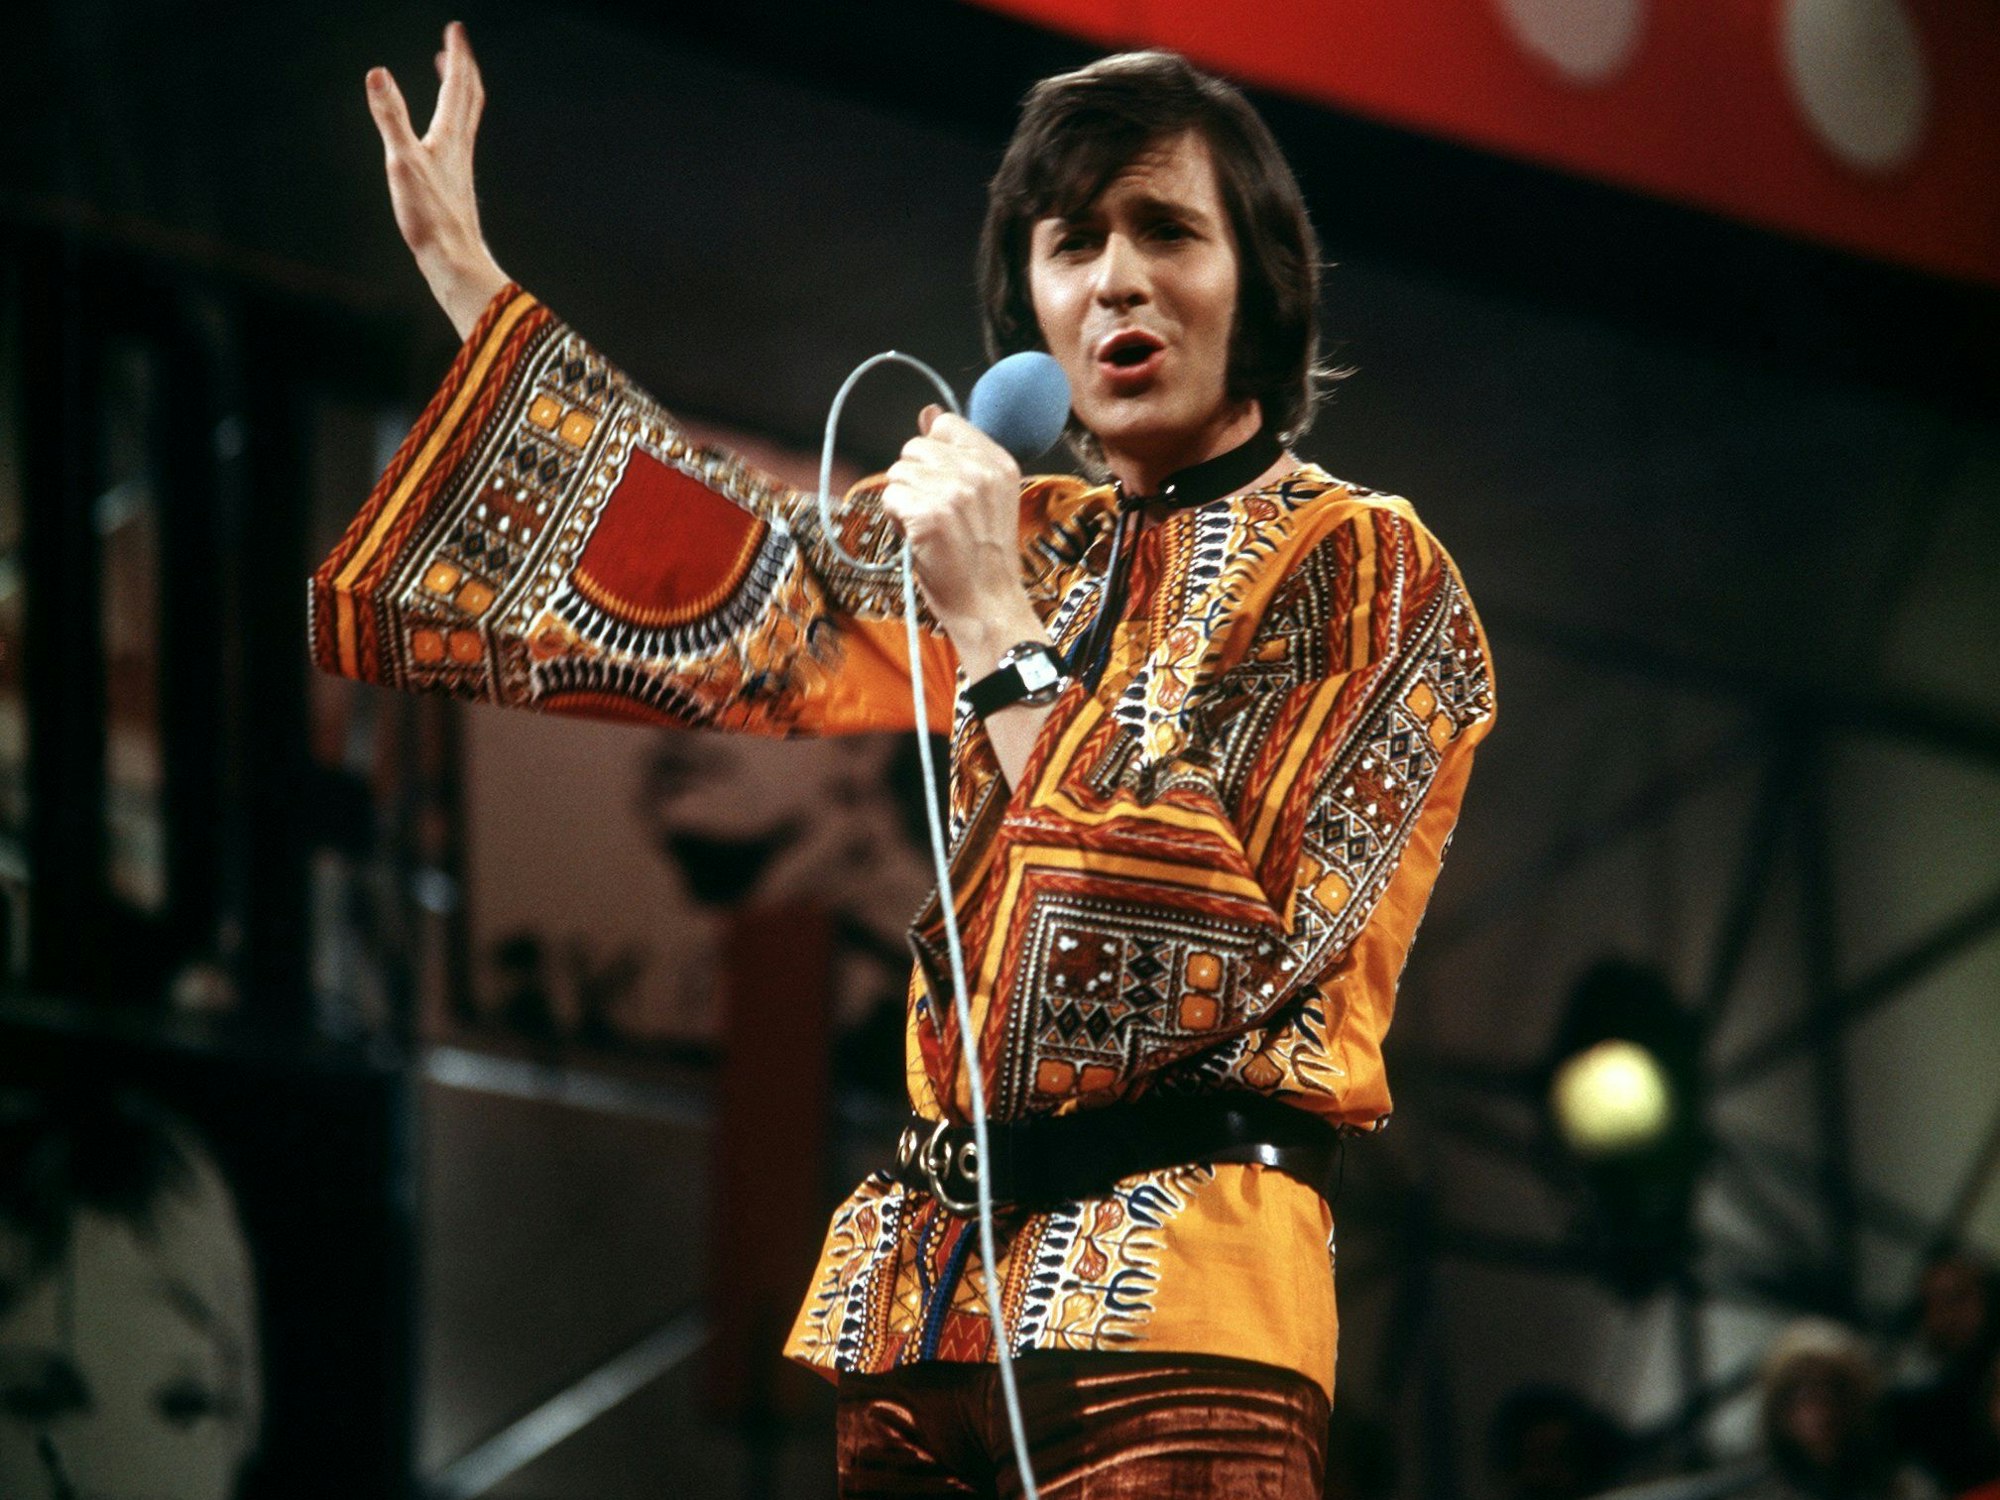 Schlagersänger Michael Holm bei einem Auftritt in der ZDF-Hitparade in den 1970-er Jahren.